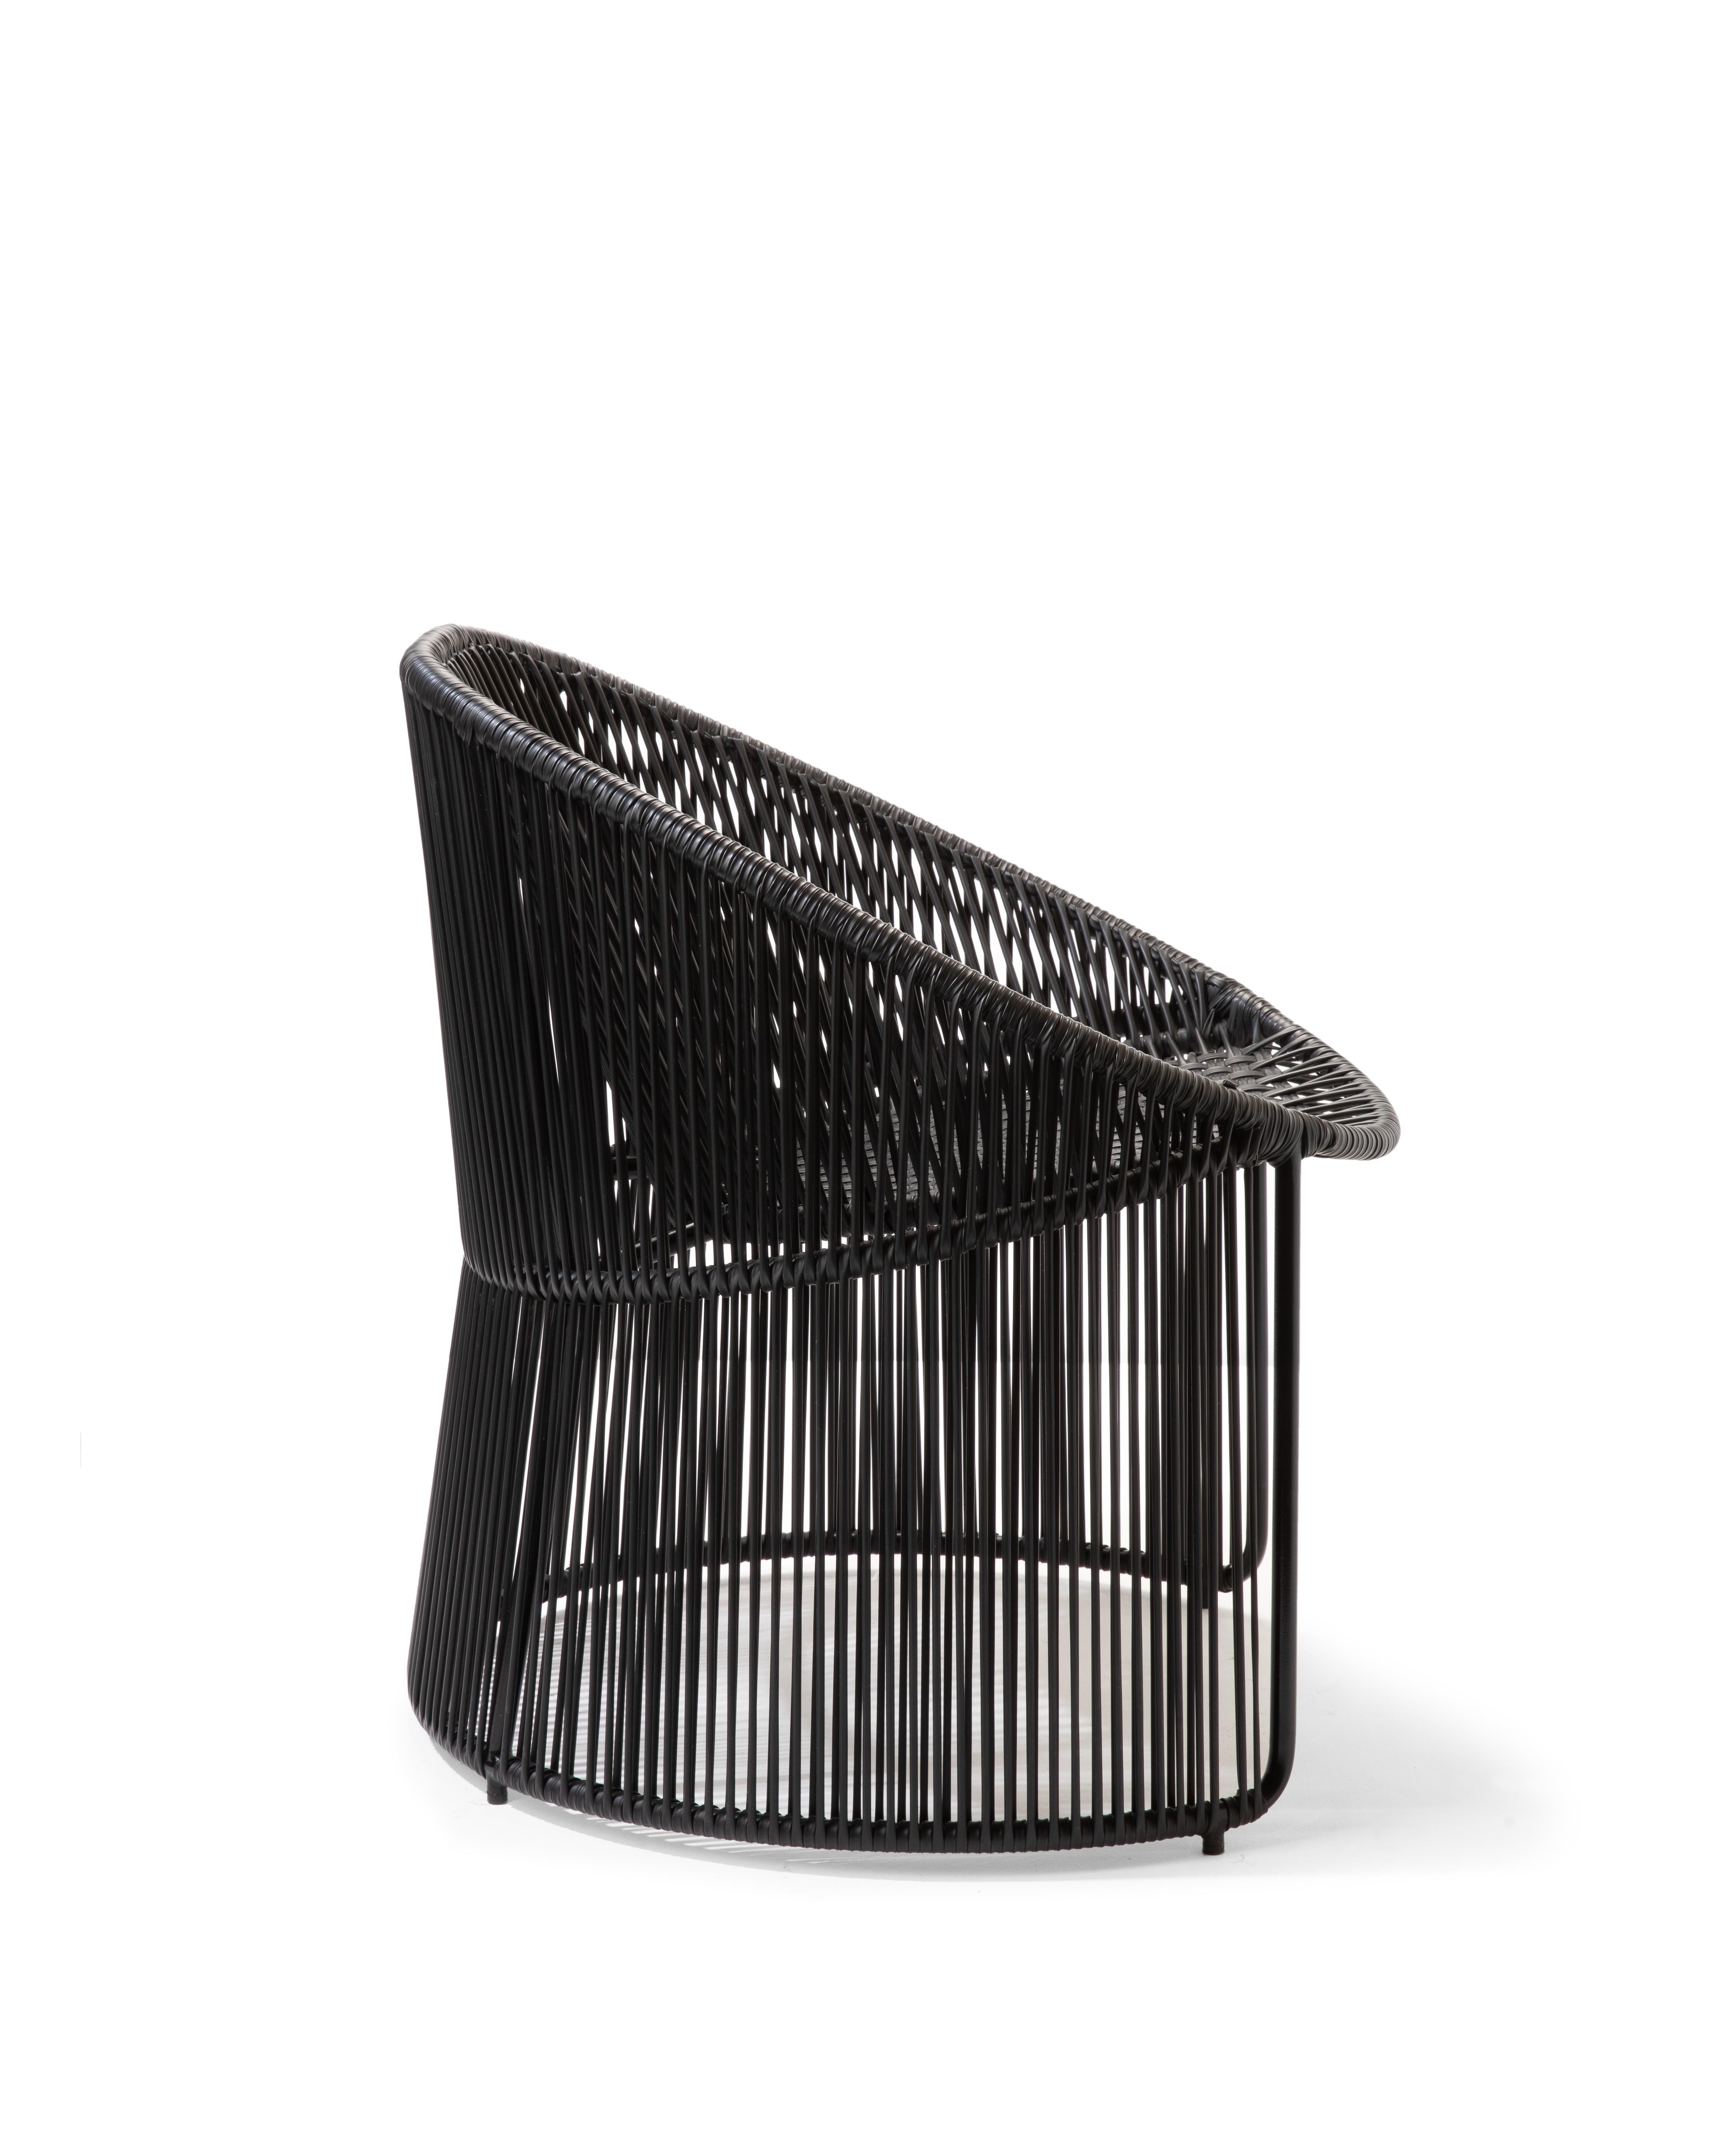 German Black Cartagenas Lounge Chair by Sebastian Herkner For Sale